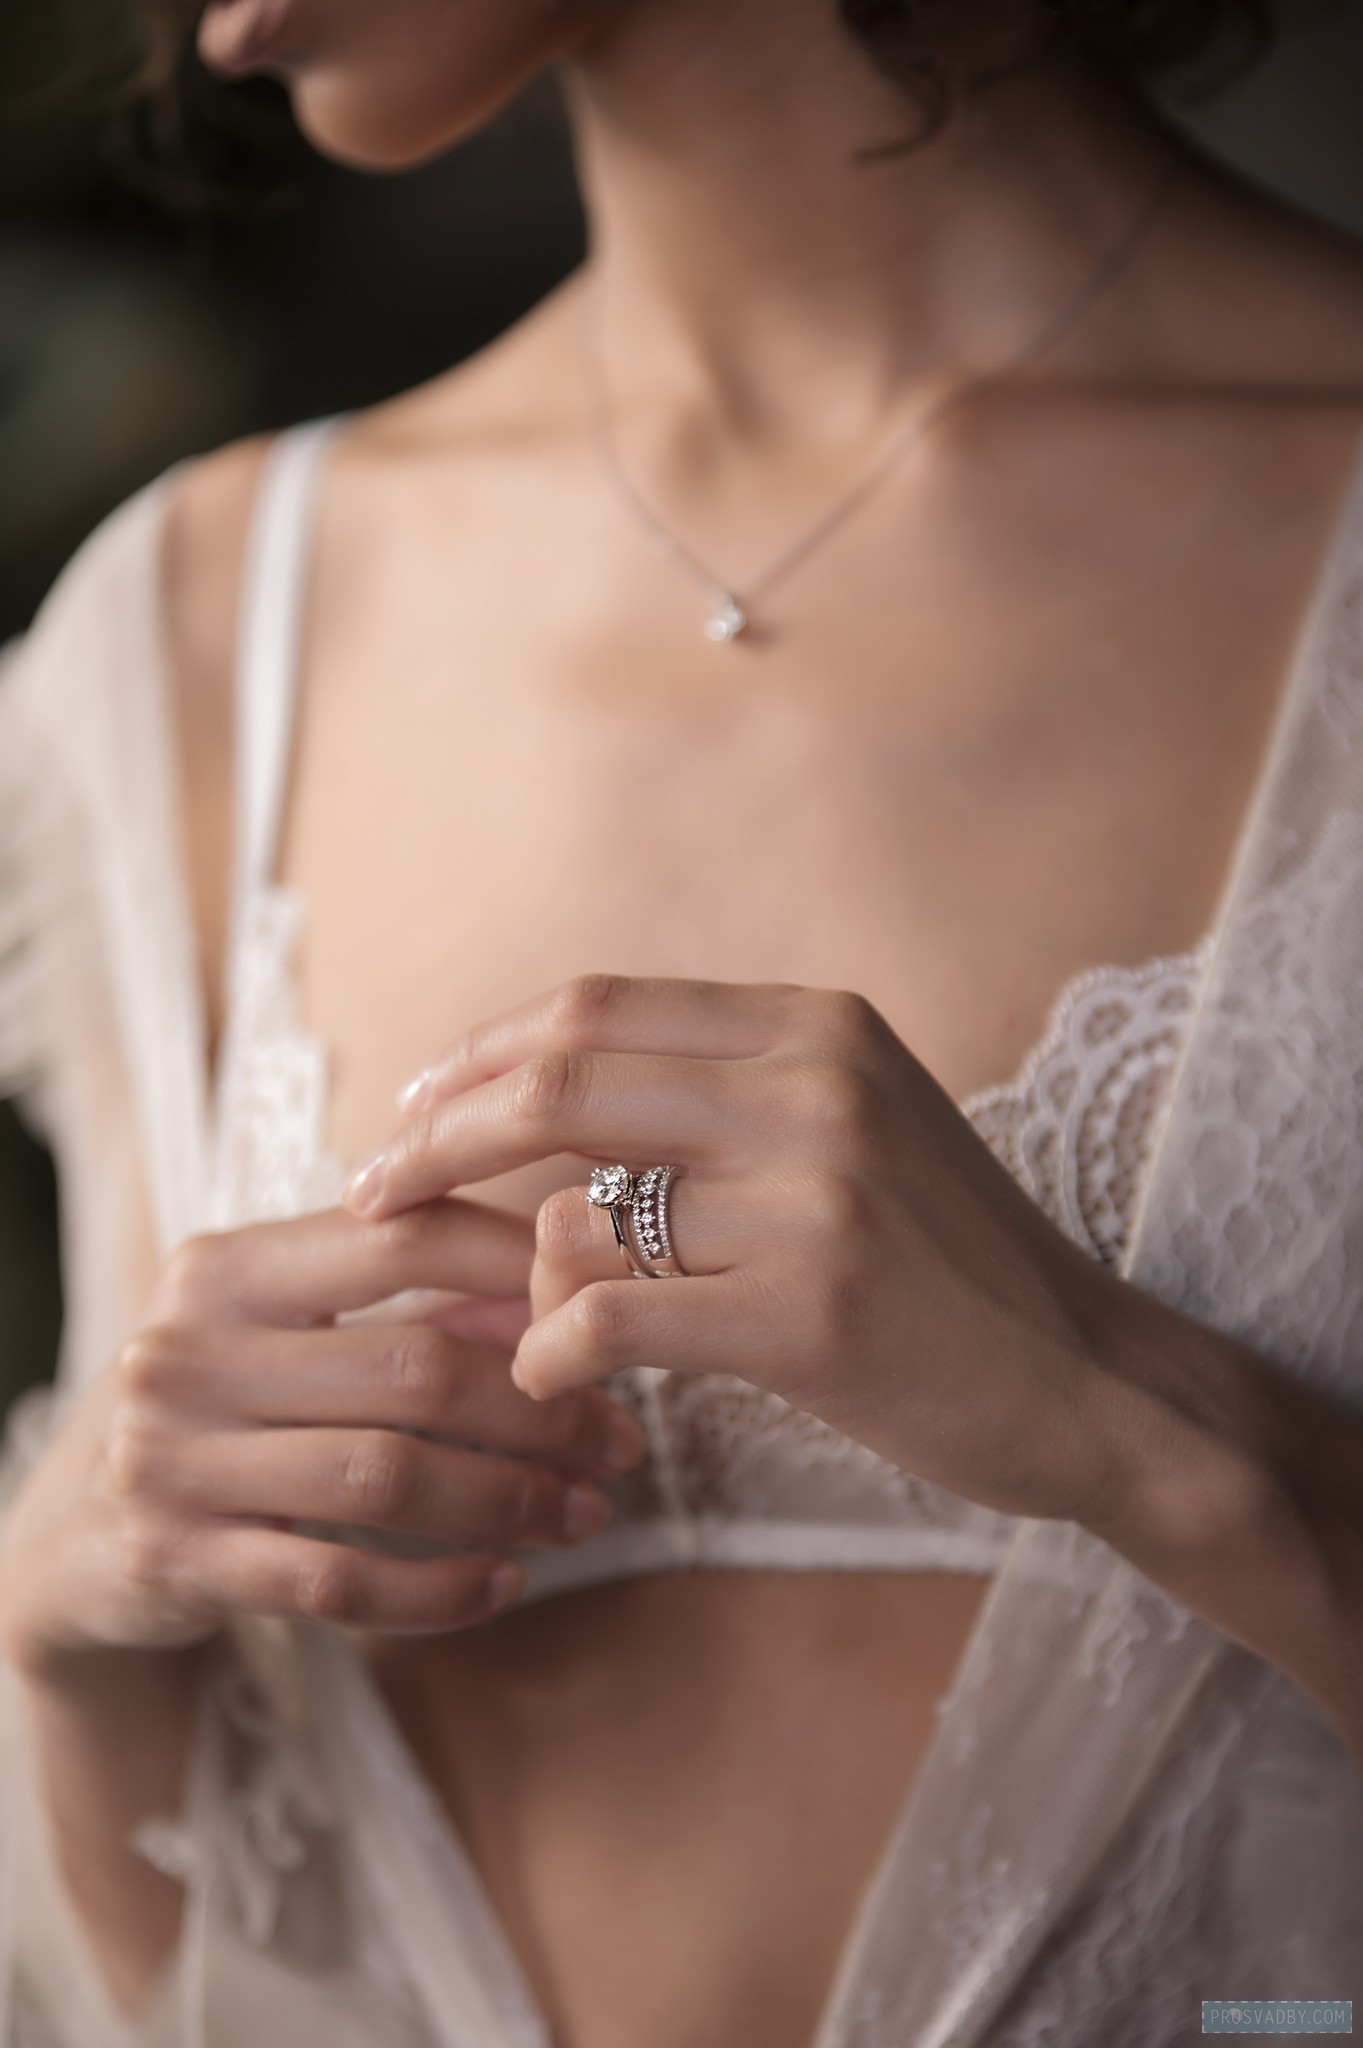 У каждый девушки  в жизни есть главное платье - это белое свадебное. И два важных кольца - помолвочное и обручальное. У нашей невесты кольца из белого золота с бриллиантами, невероятно красивые. Такие, о которых мечтает любая девушка.